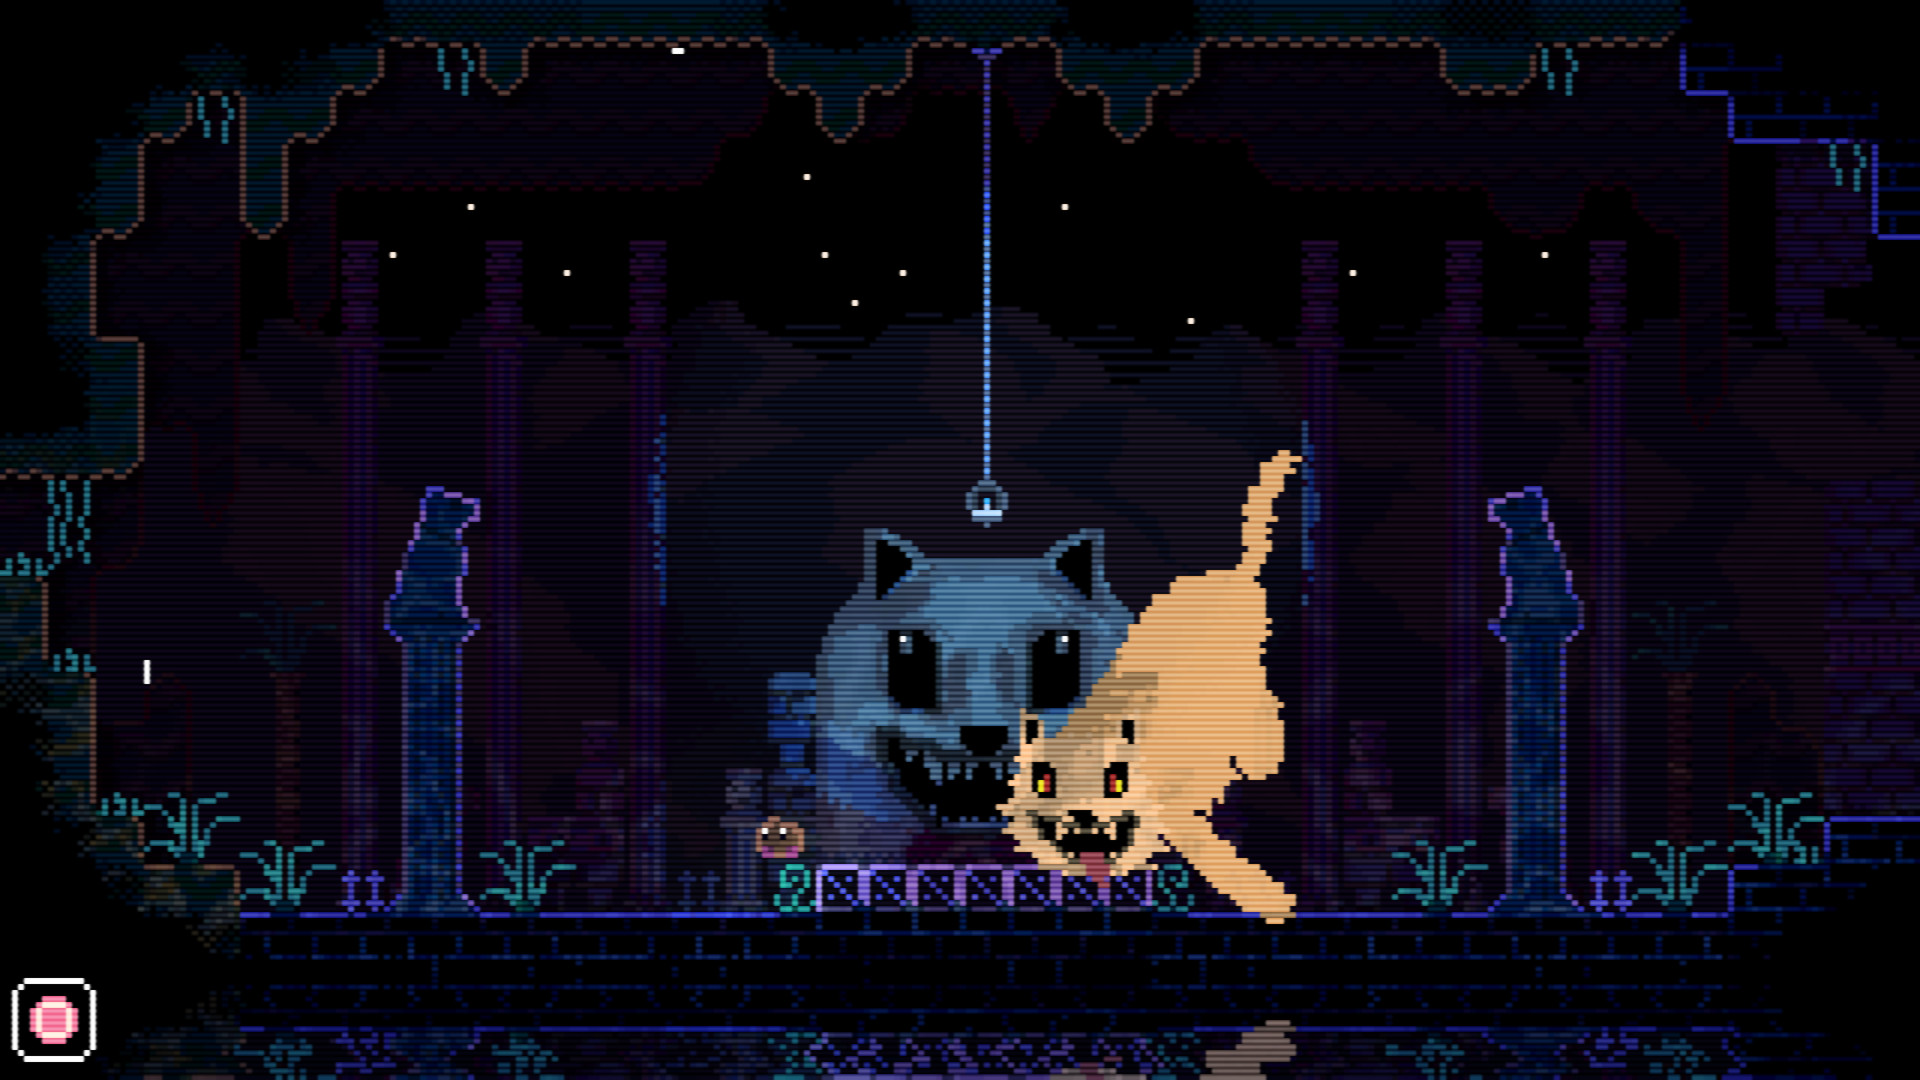 Animal Well 게임의 화면인데 맵에 유령 고양이가 나타나 있습니다.